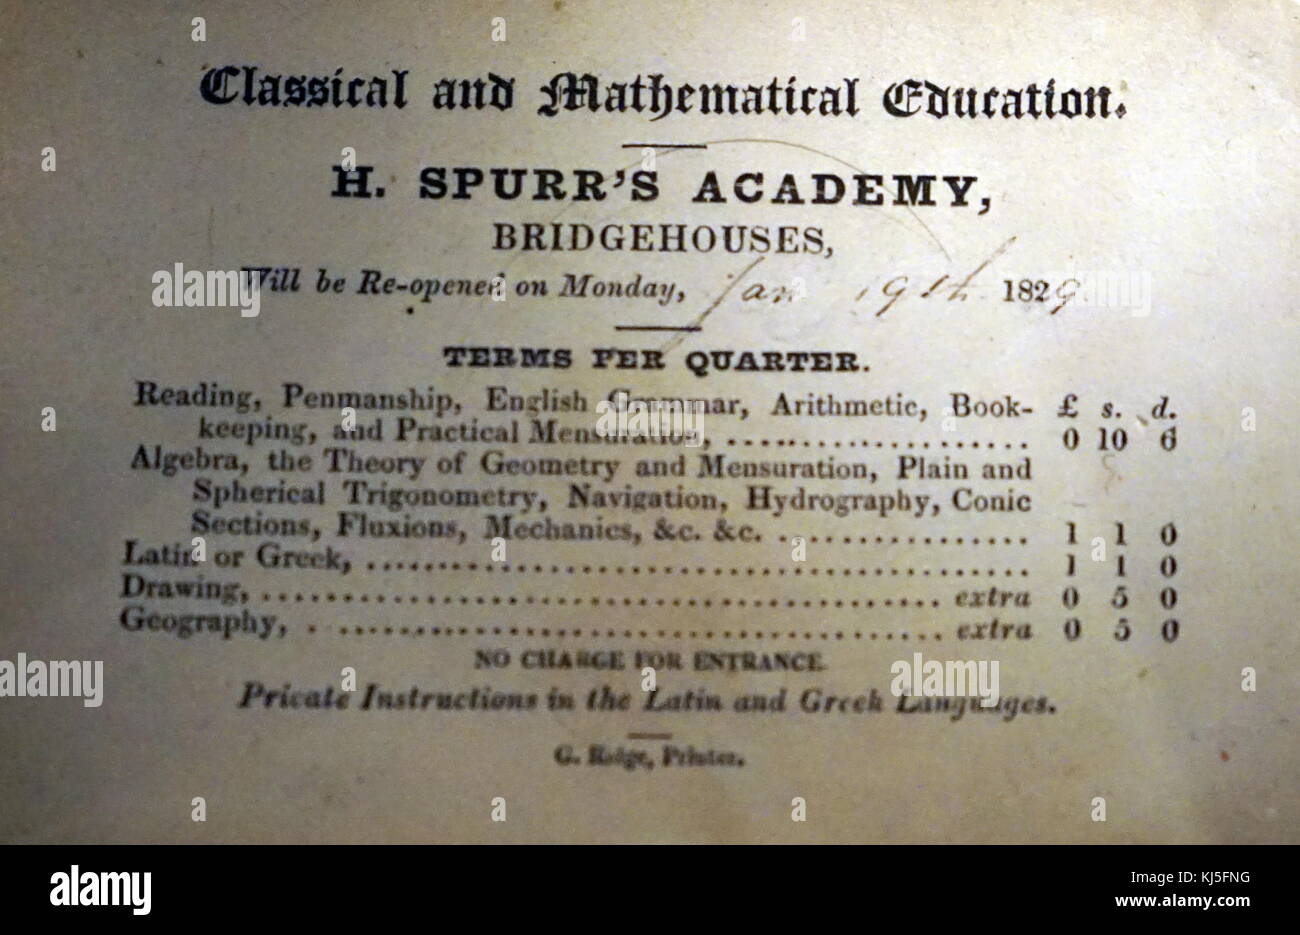 H. La Academia Spurr Bridgehouses lista de precios para clases y admisión. Fecha del siglo XIX Foto de stock